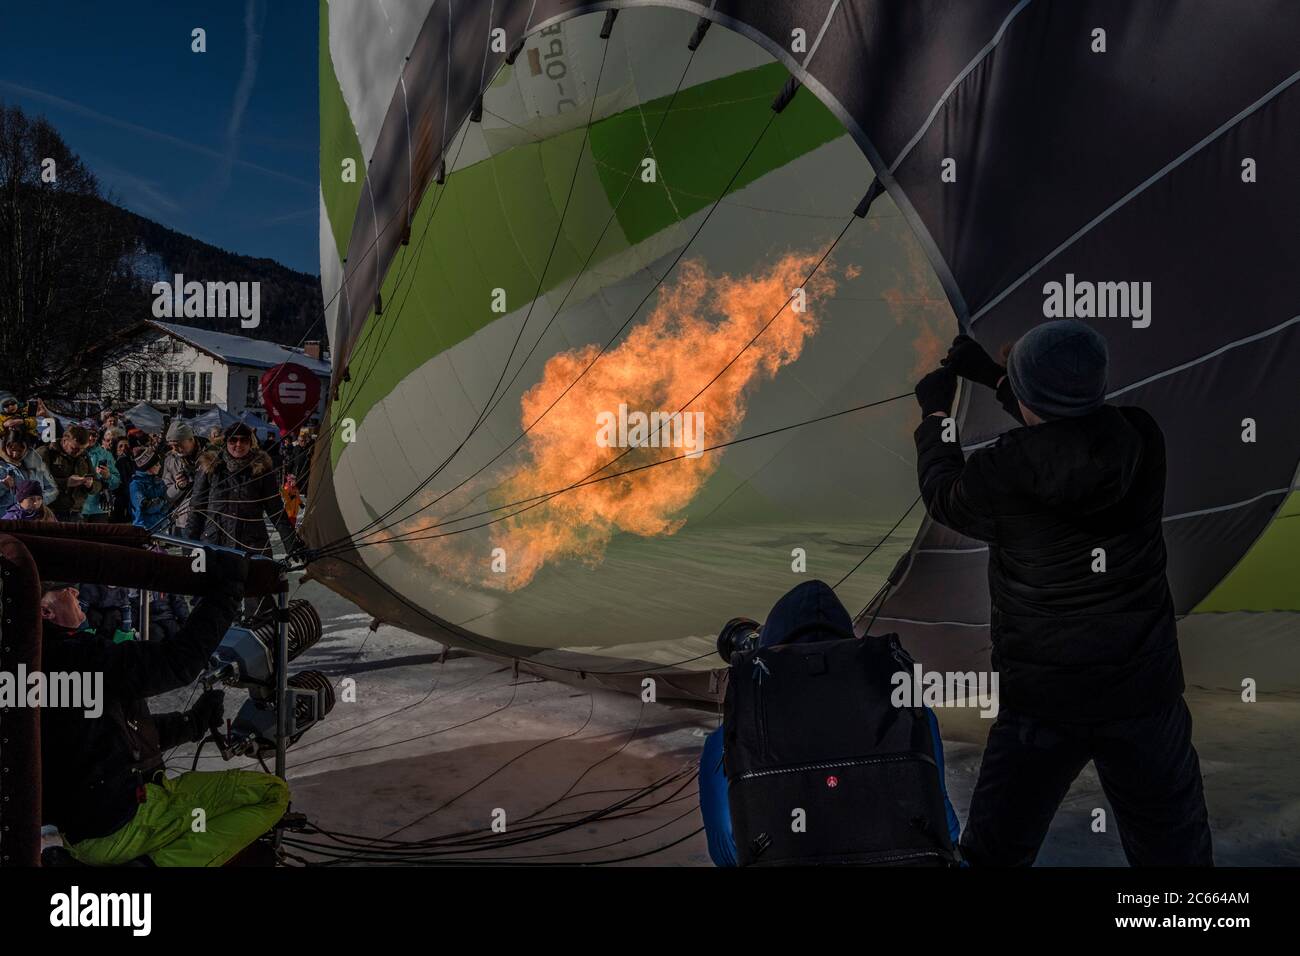 Flamme zum Erhitzen der Luft eines Heißluftballons Stockfoto